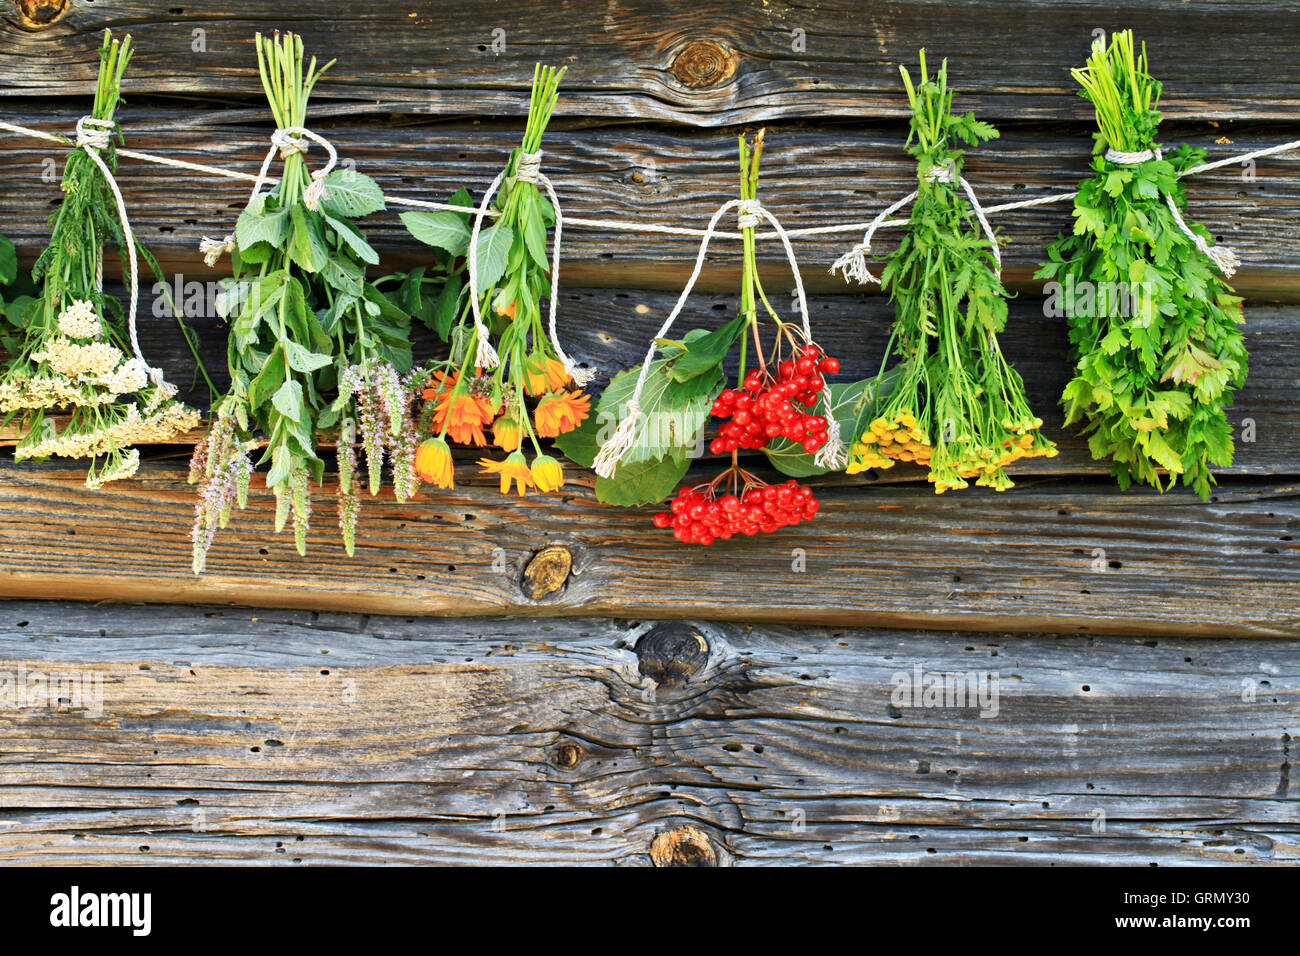 El secado de plantas medicinales Foto de stock